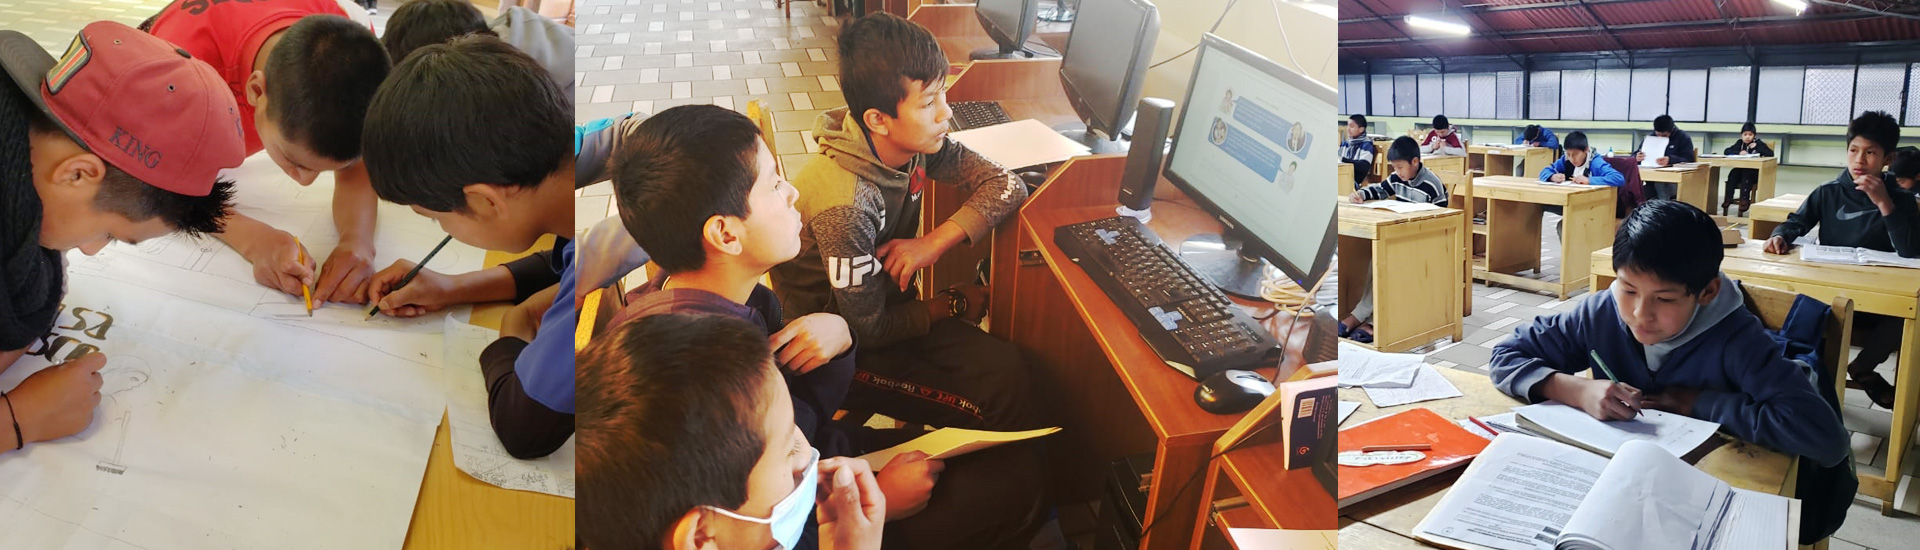 El coronavirus no puede con los sueños de futuro de los jóvenes en la Casa Don Bosco de Calca (Perú)